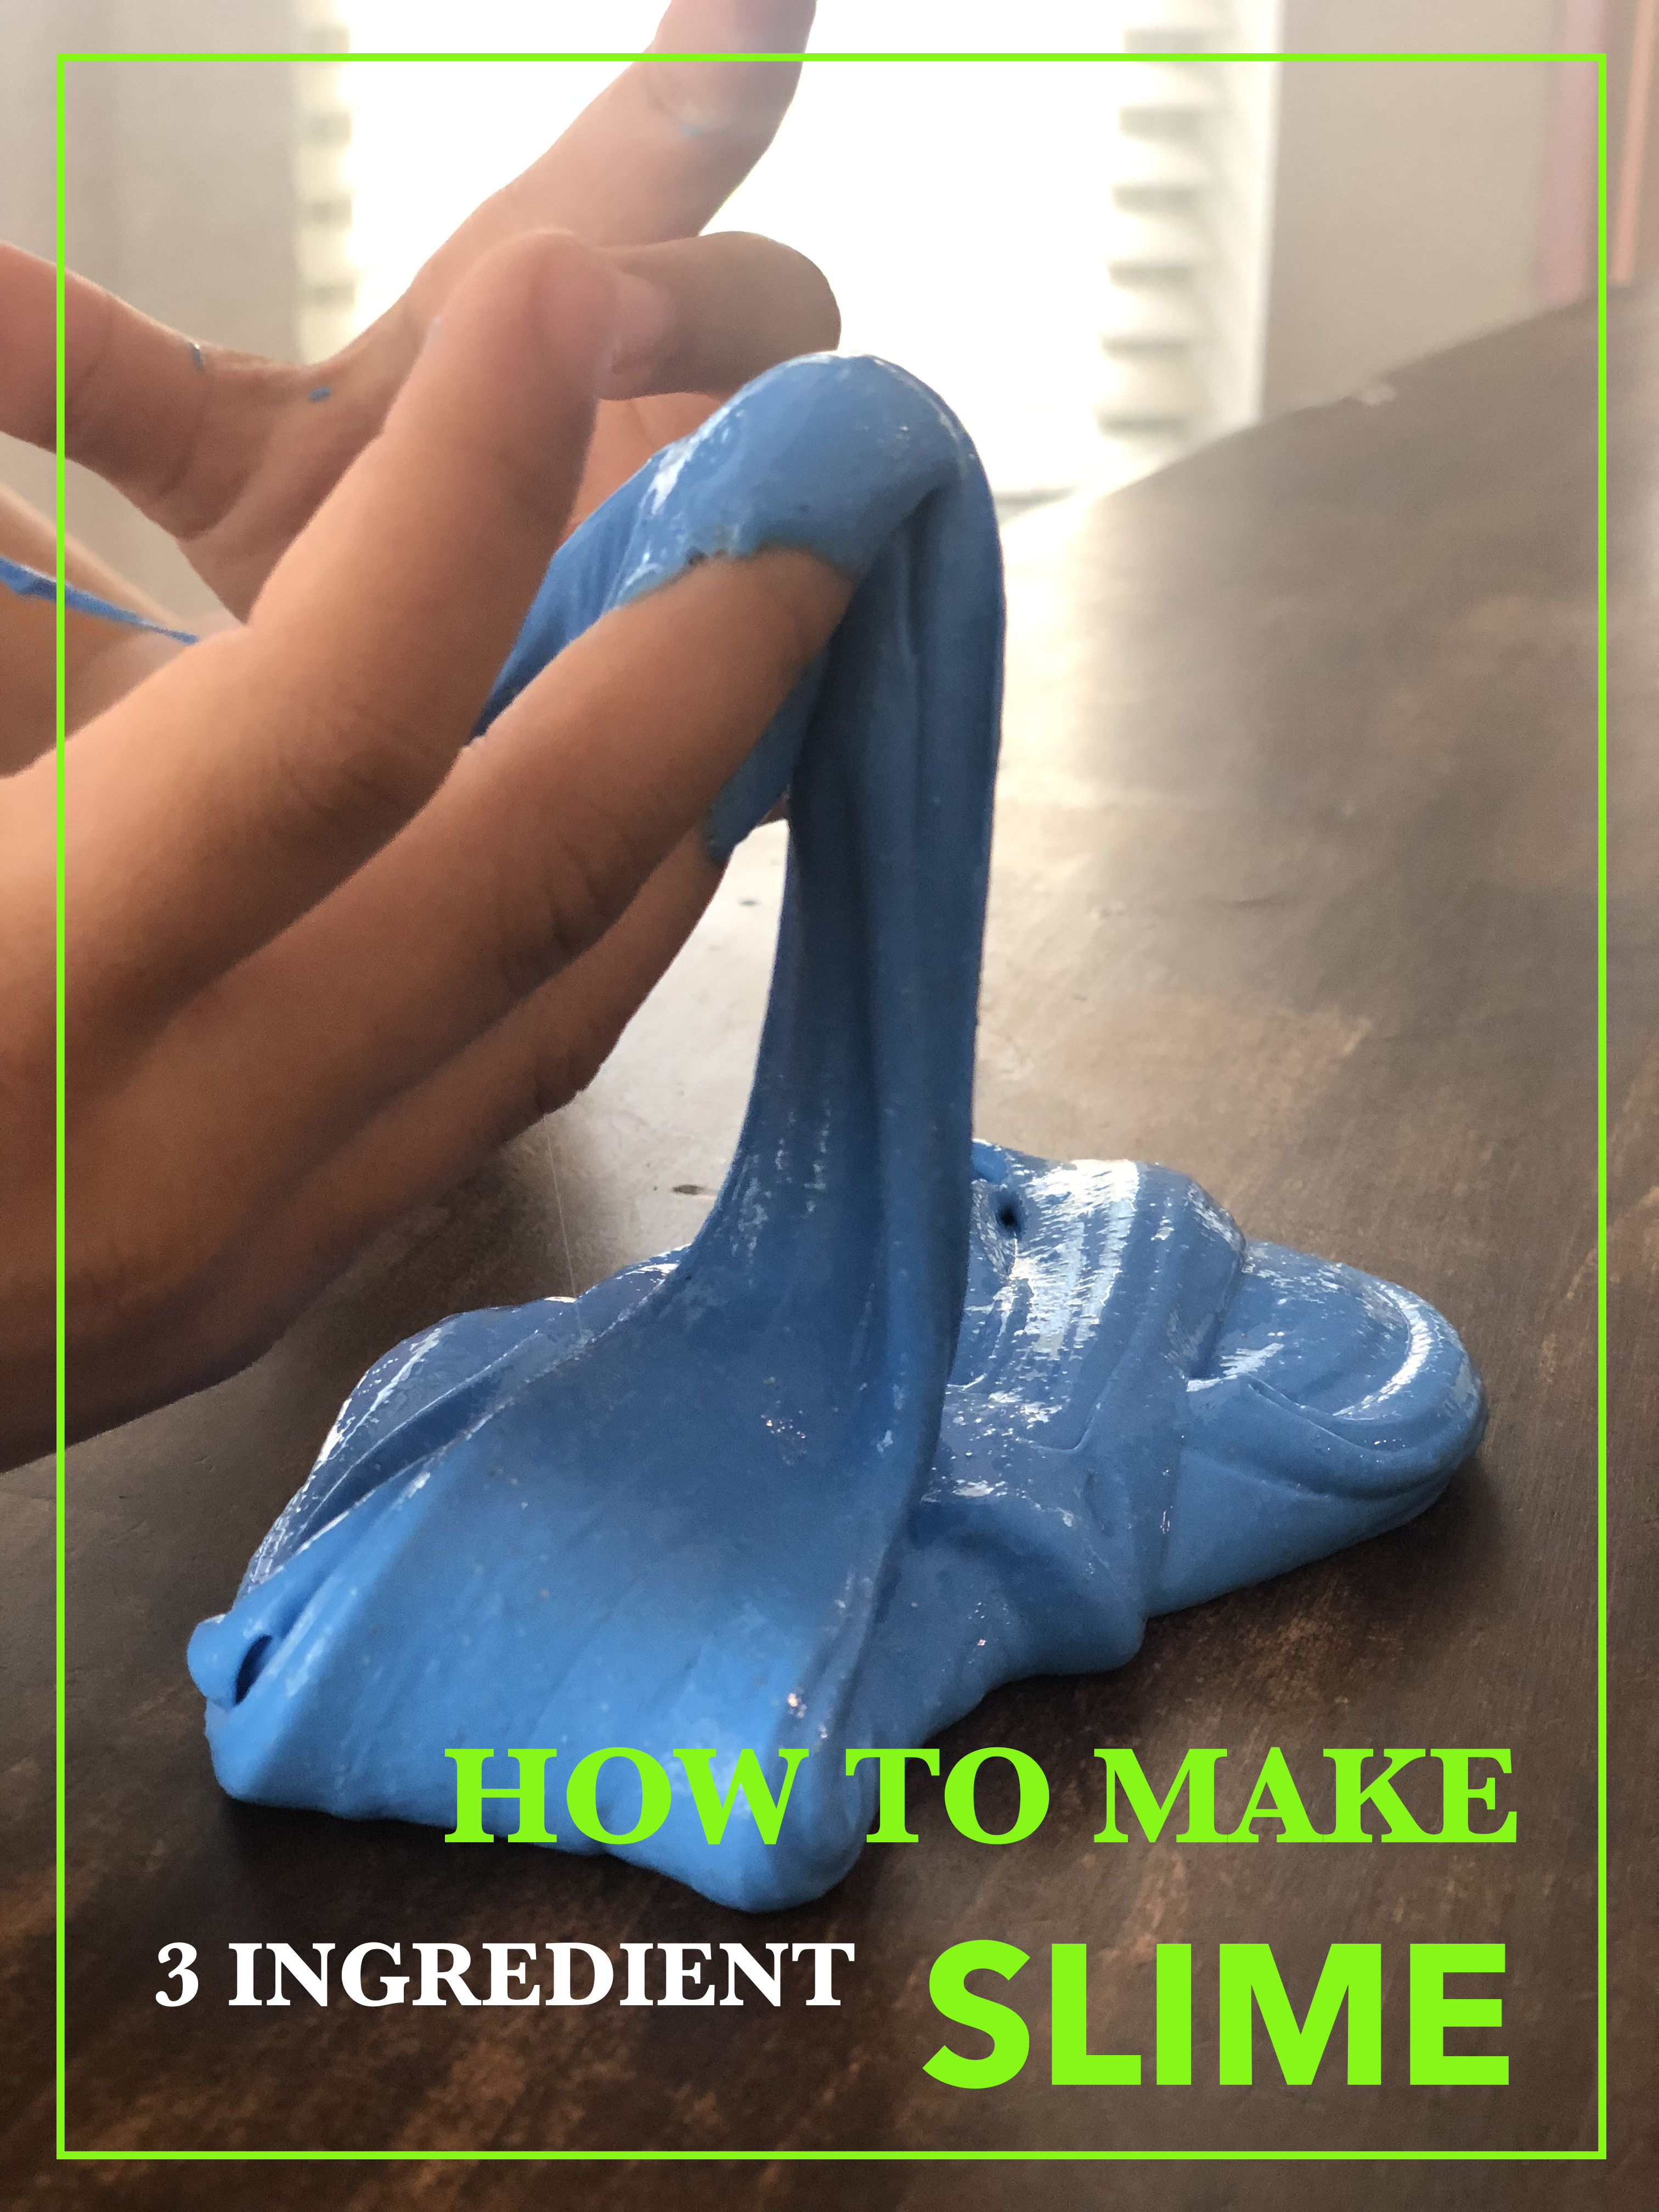 How to Make Slime 2019